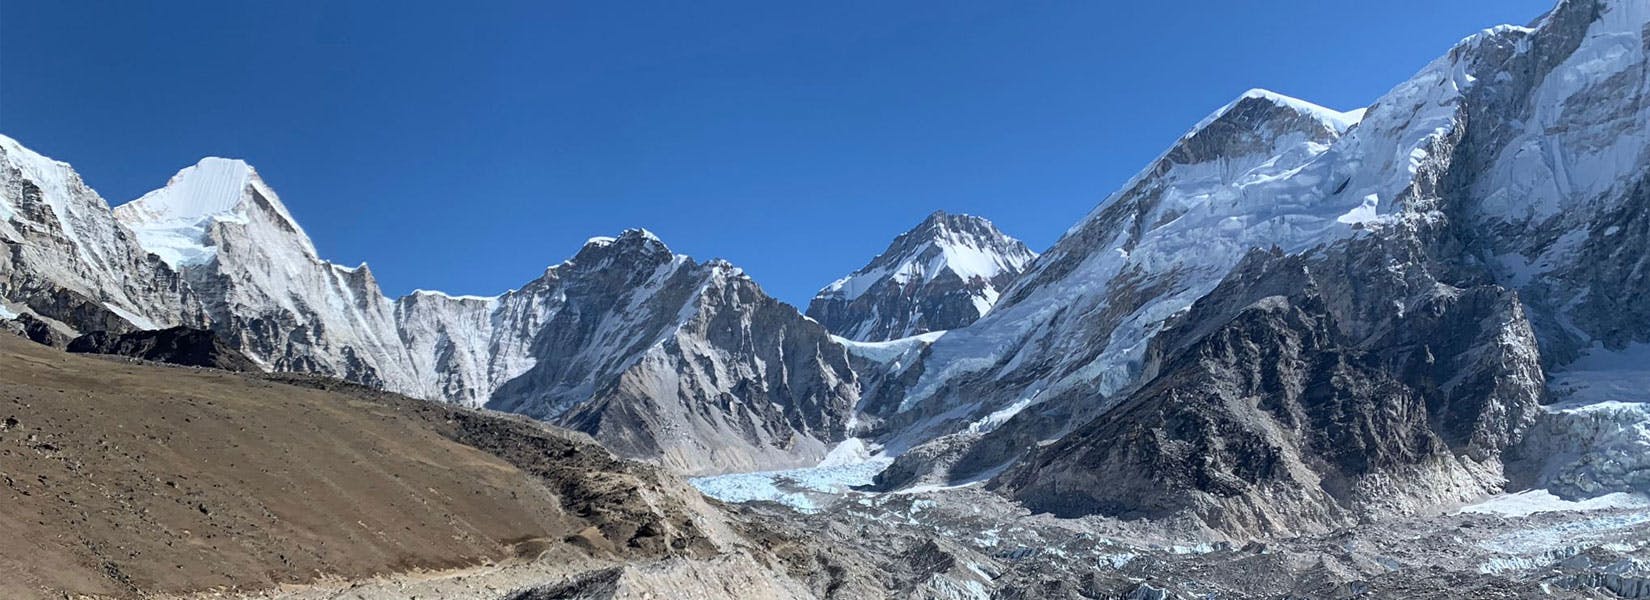 10 Best Everest Base Camp Trek Packages